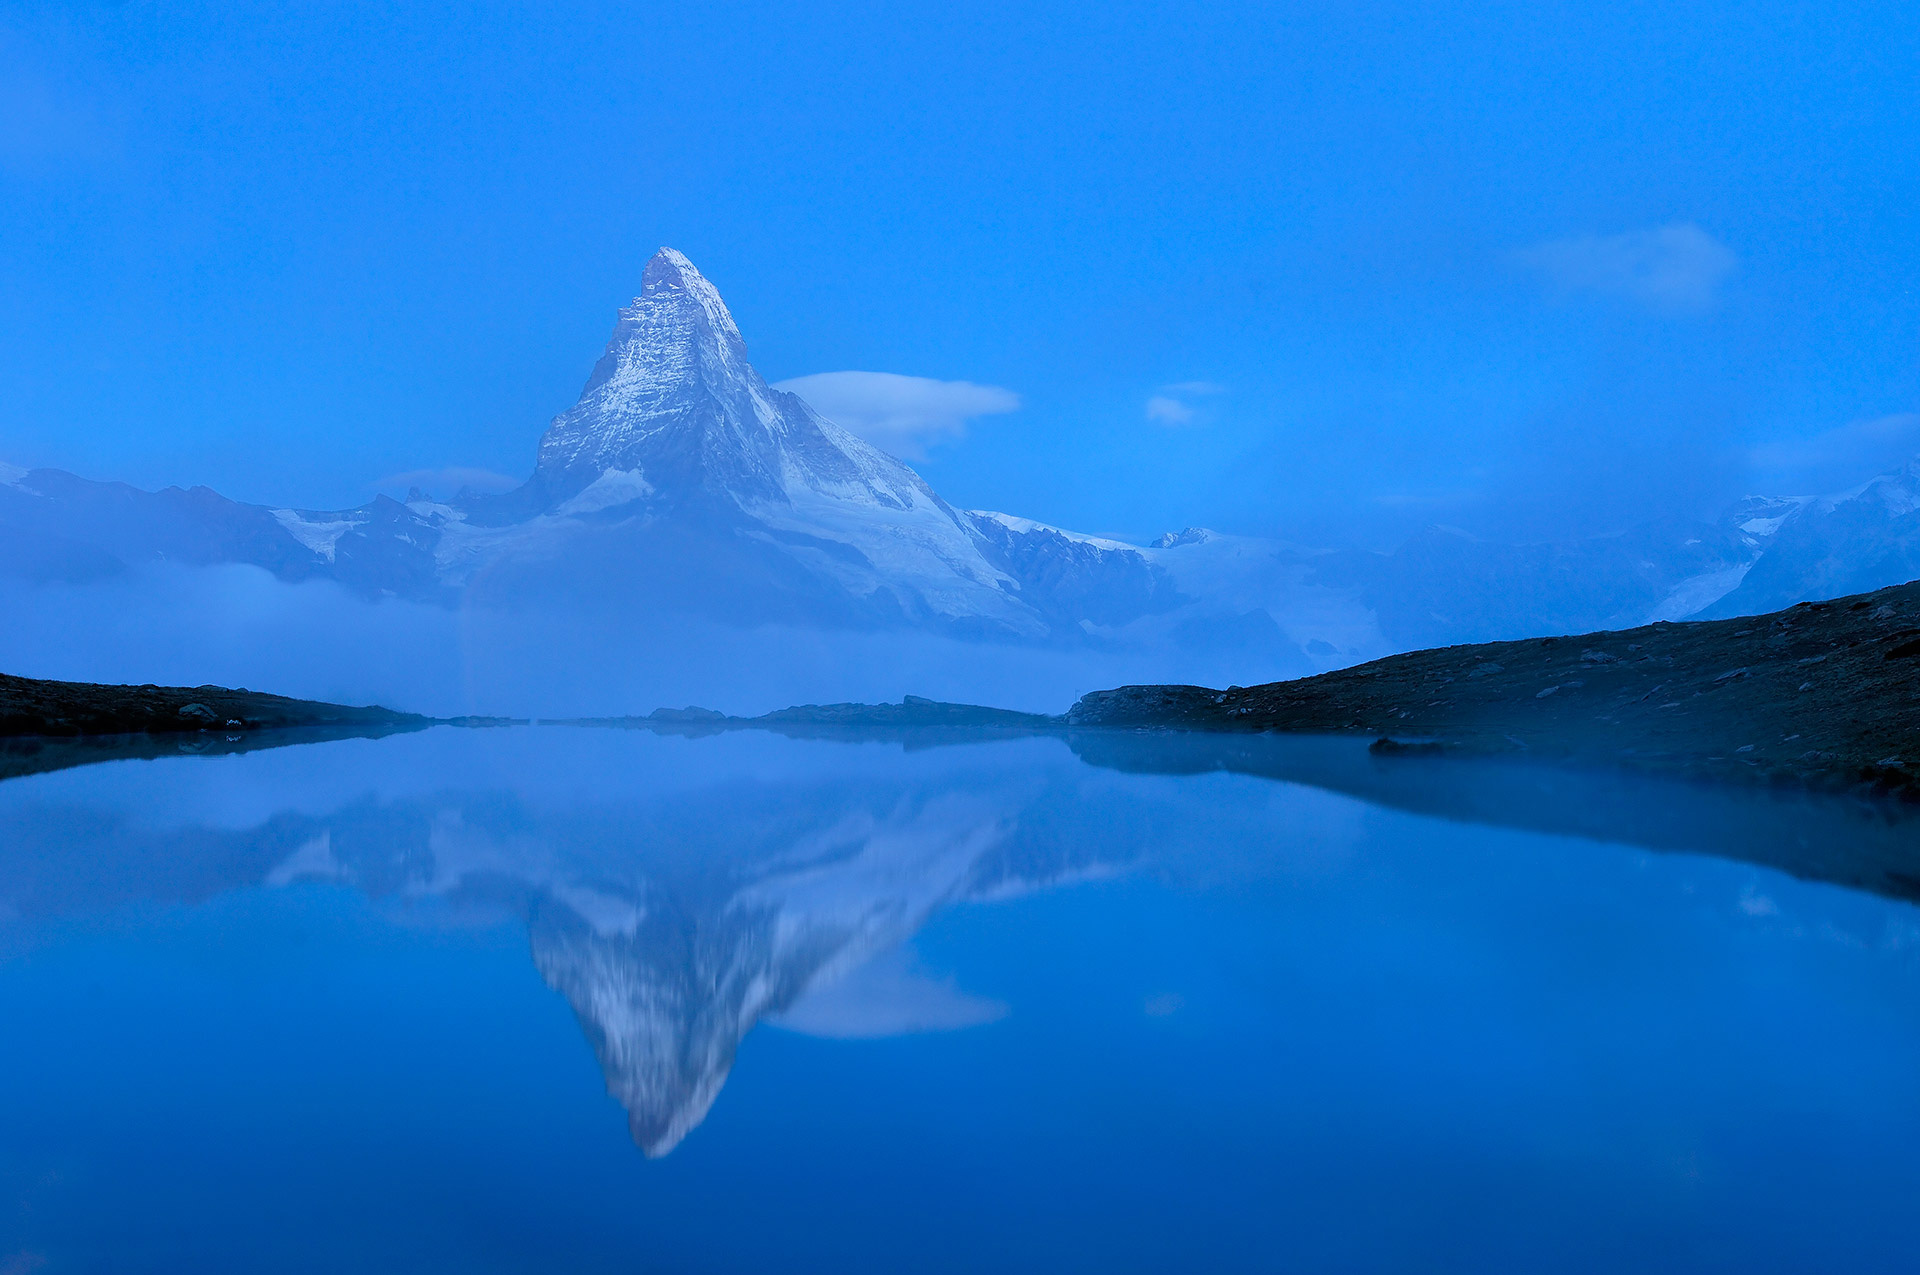 De Matterhorn voor zonsopkomst, ook gespiegeld in water.